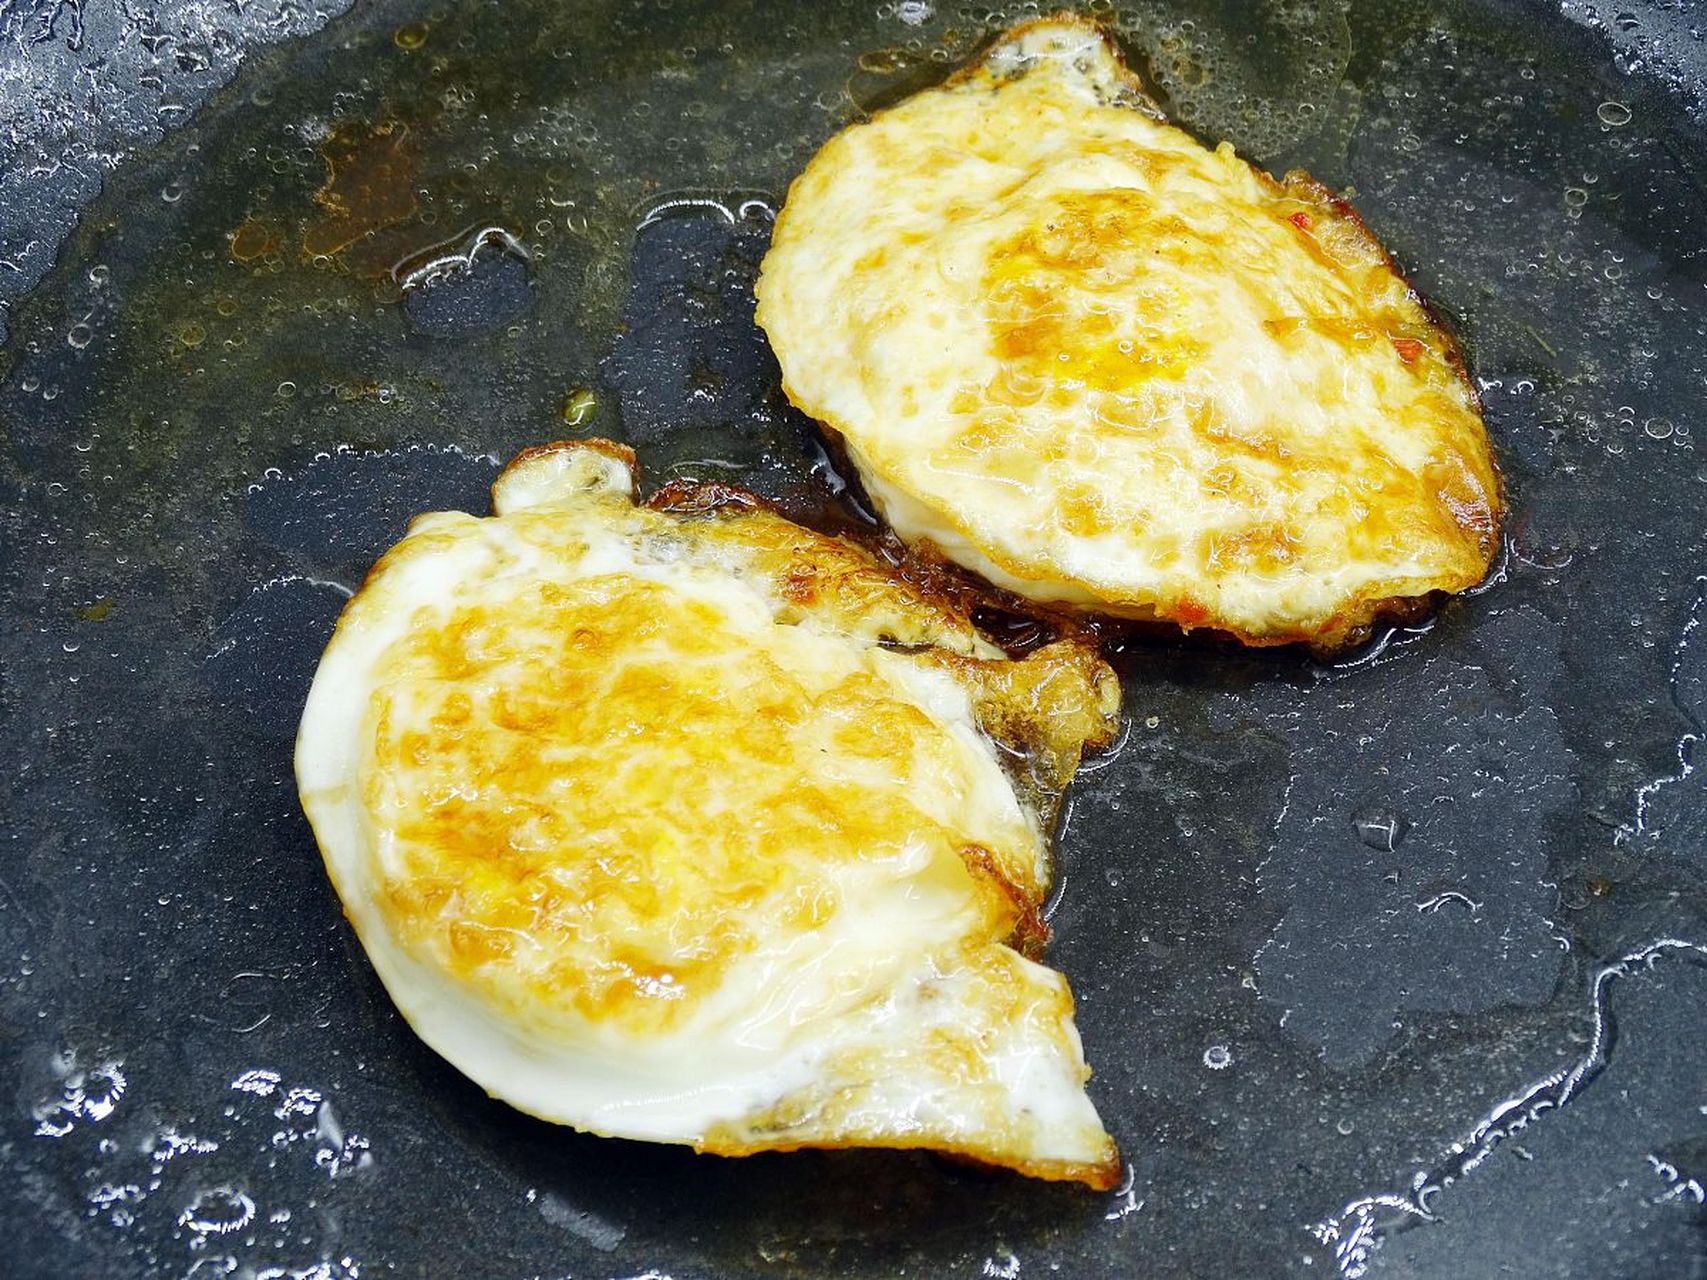 双面煎荷包蛋的做法一般是在平底锅中加入适量的油,将打好的鸡蛋